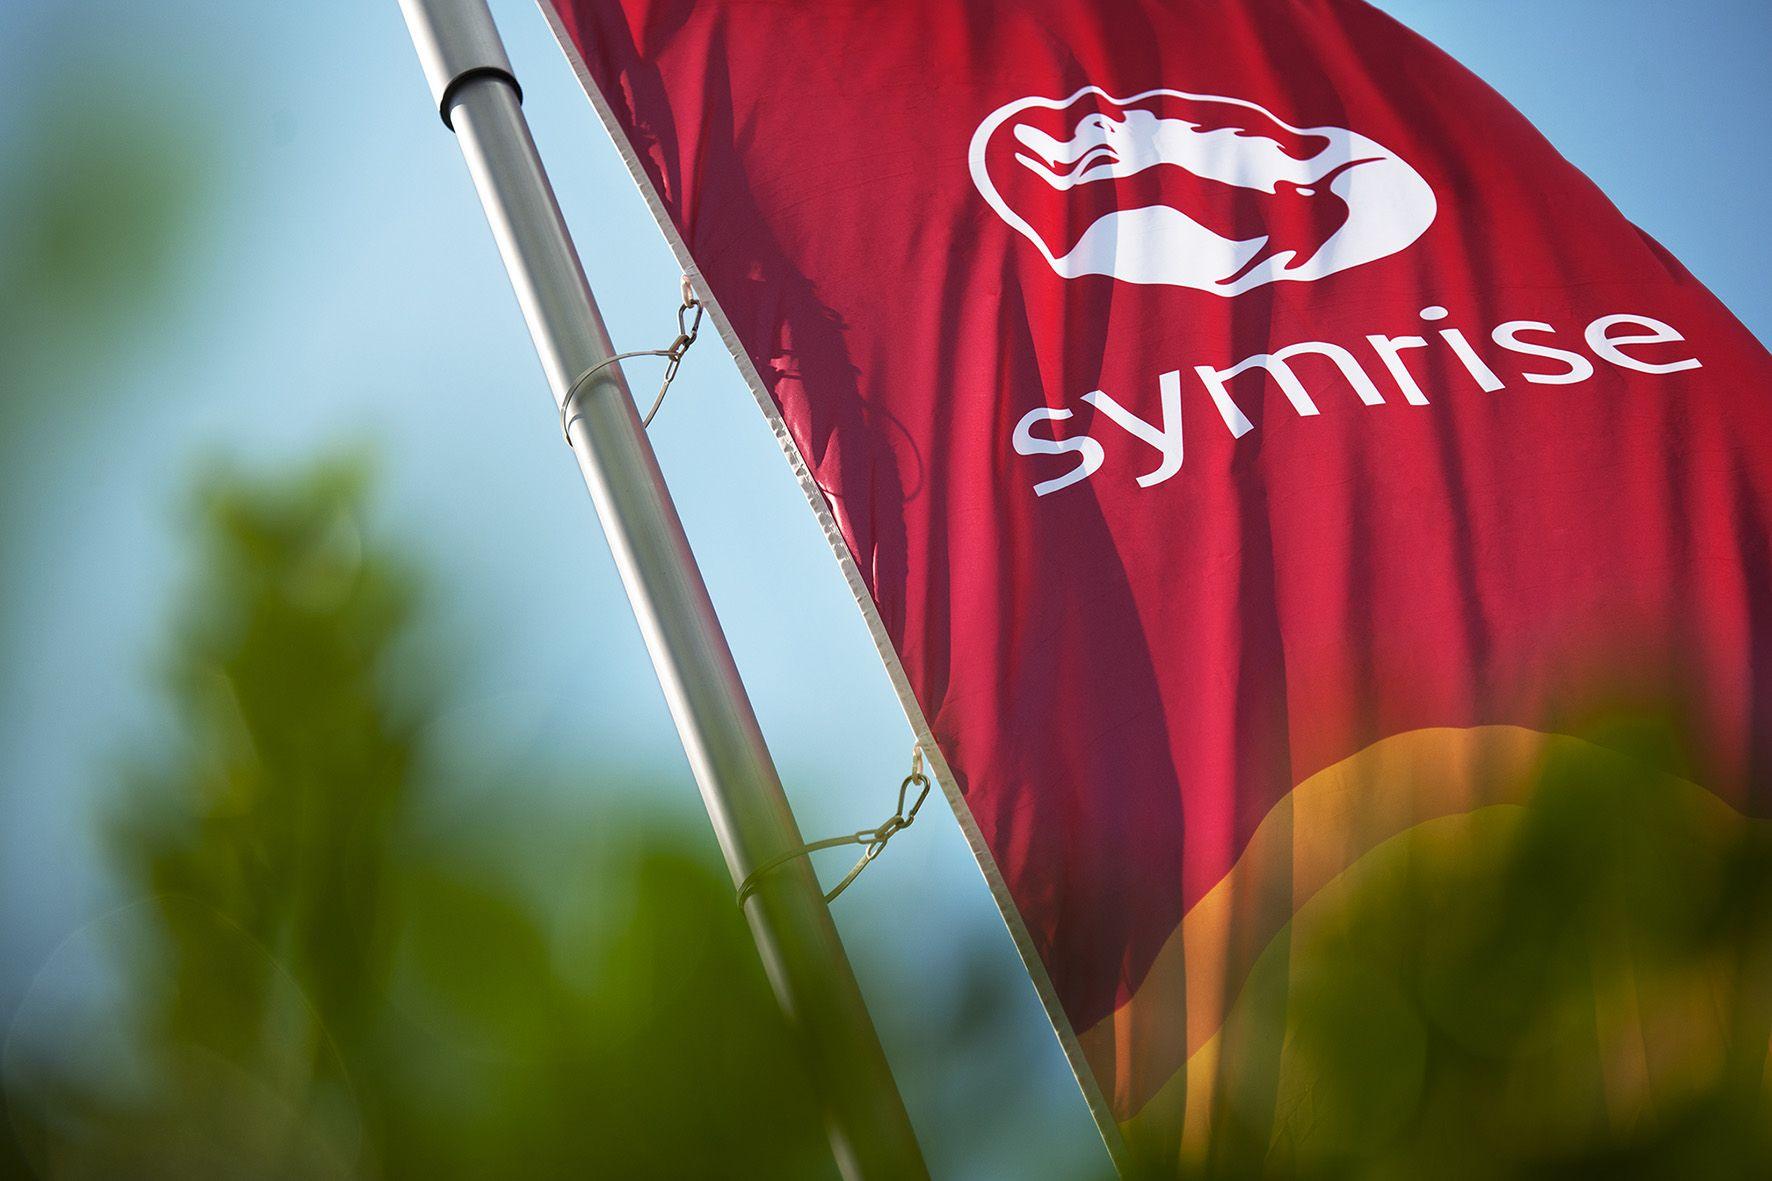 Symrise Logo - Media assets